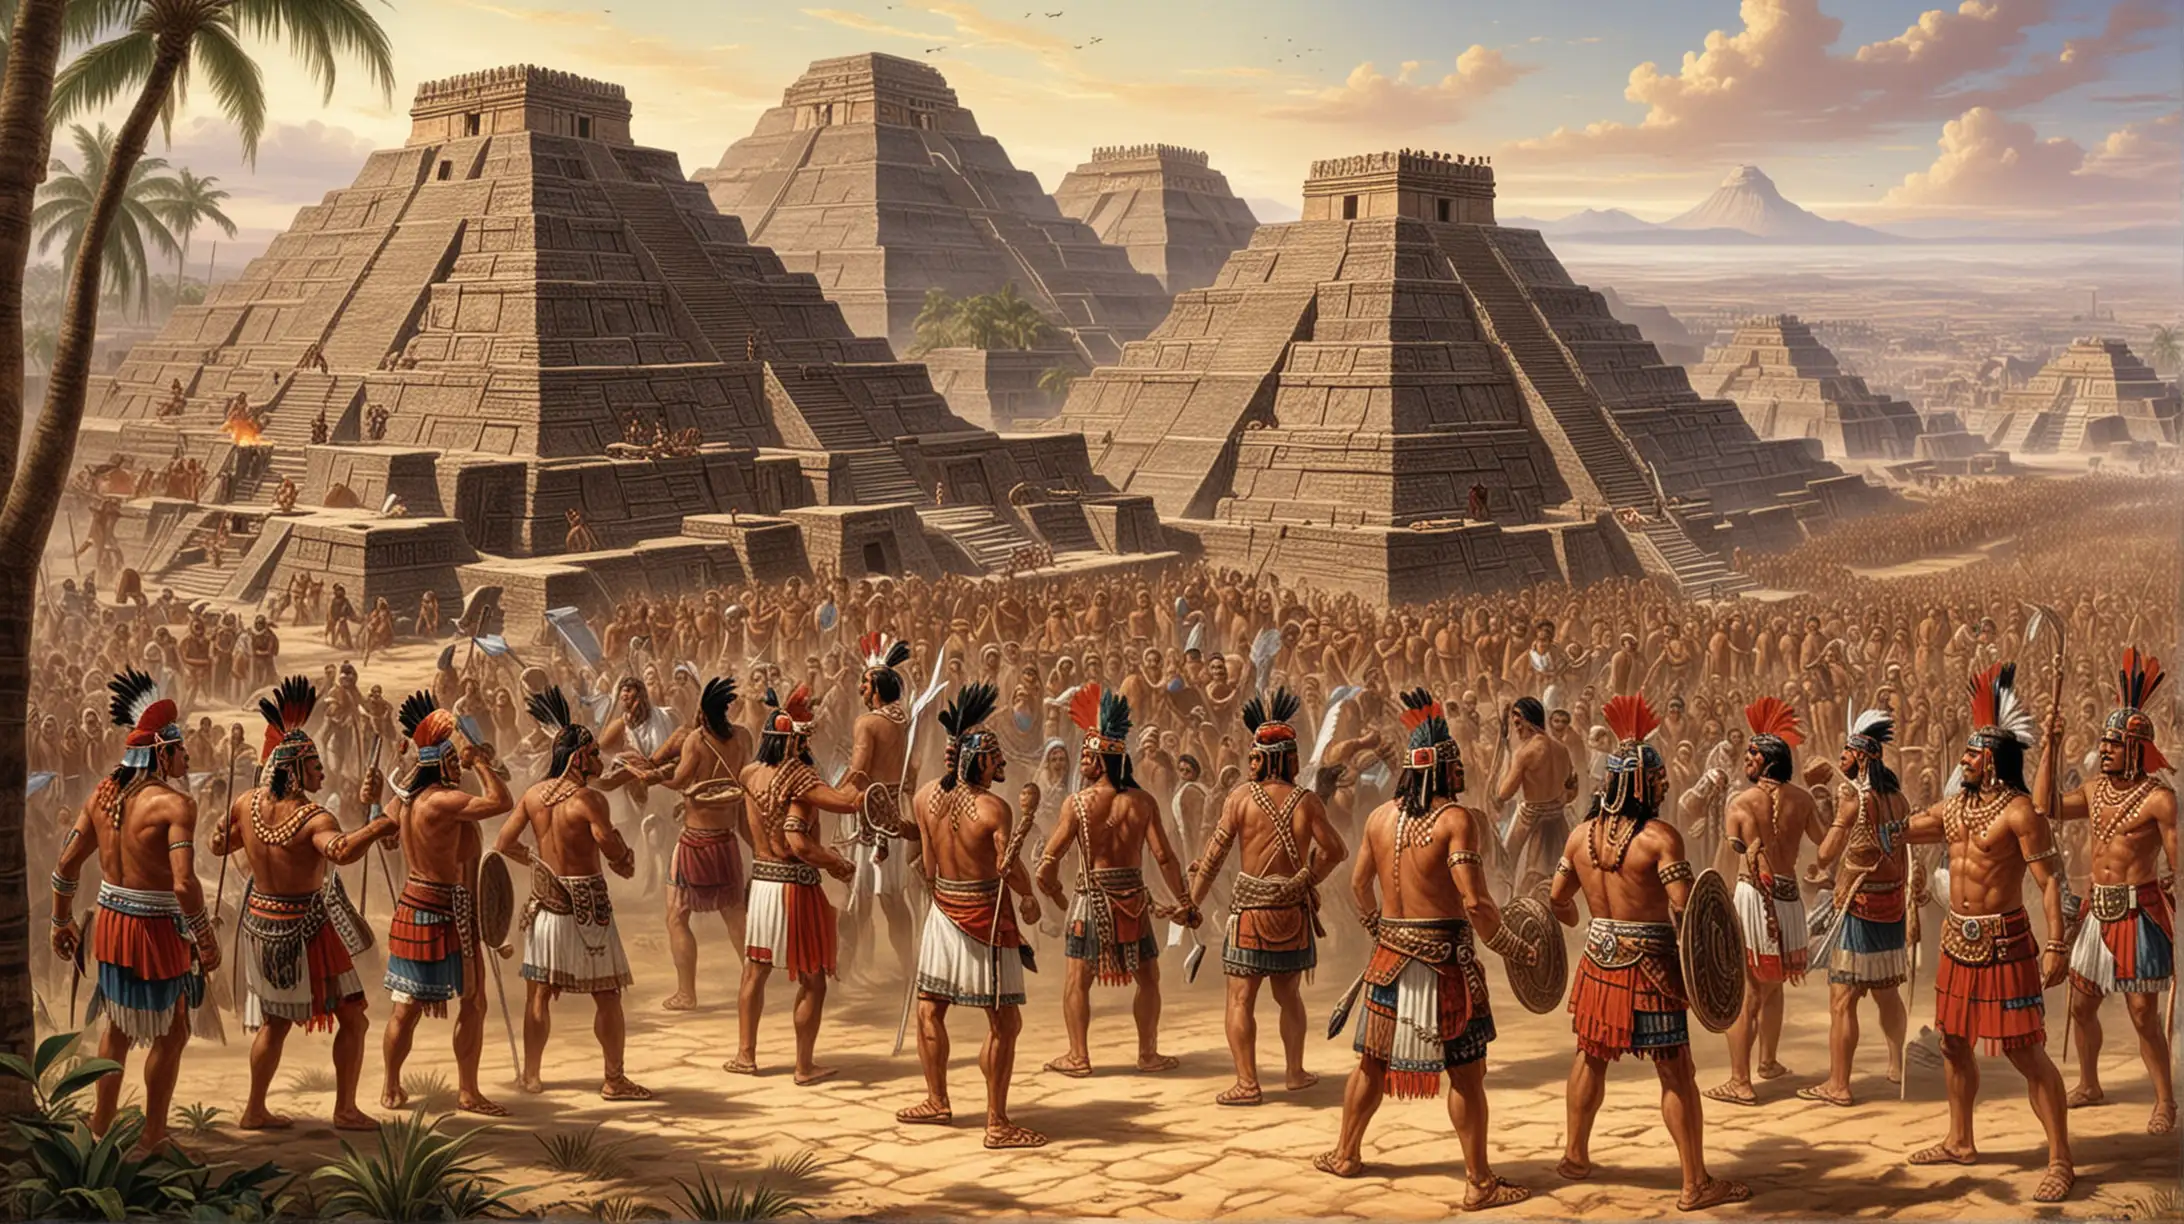 El imperio azteca era poderoso. Gobernaban una gran cantidad de territorios, pero también había muchas otras culturas y pueblos con sus propias tradiciones y formas de vida. Los aztecas eran buenos negociadores y a veces usaban la fuerza para expandir su territorio, pero también establecían alianzas con otros grupos.